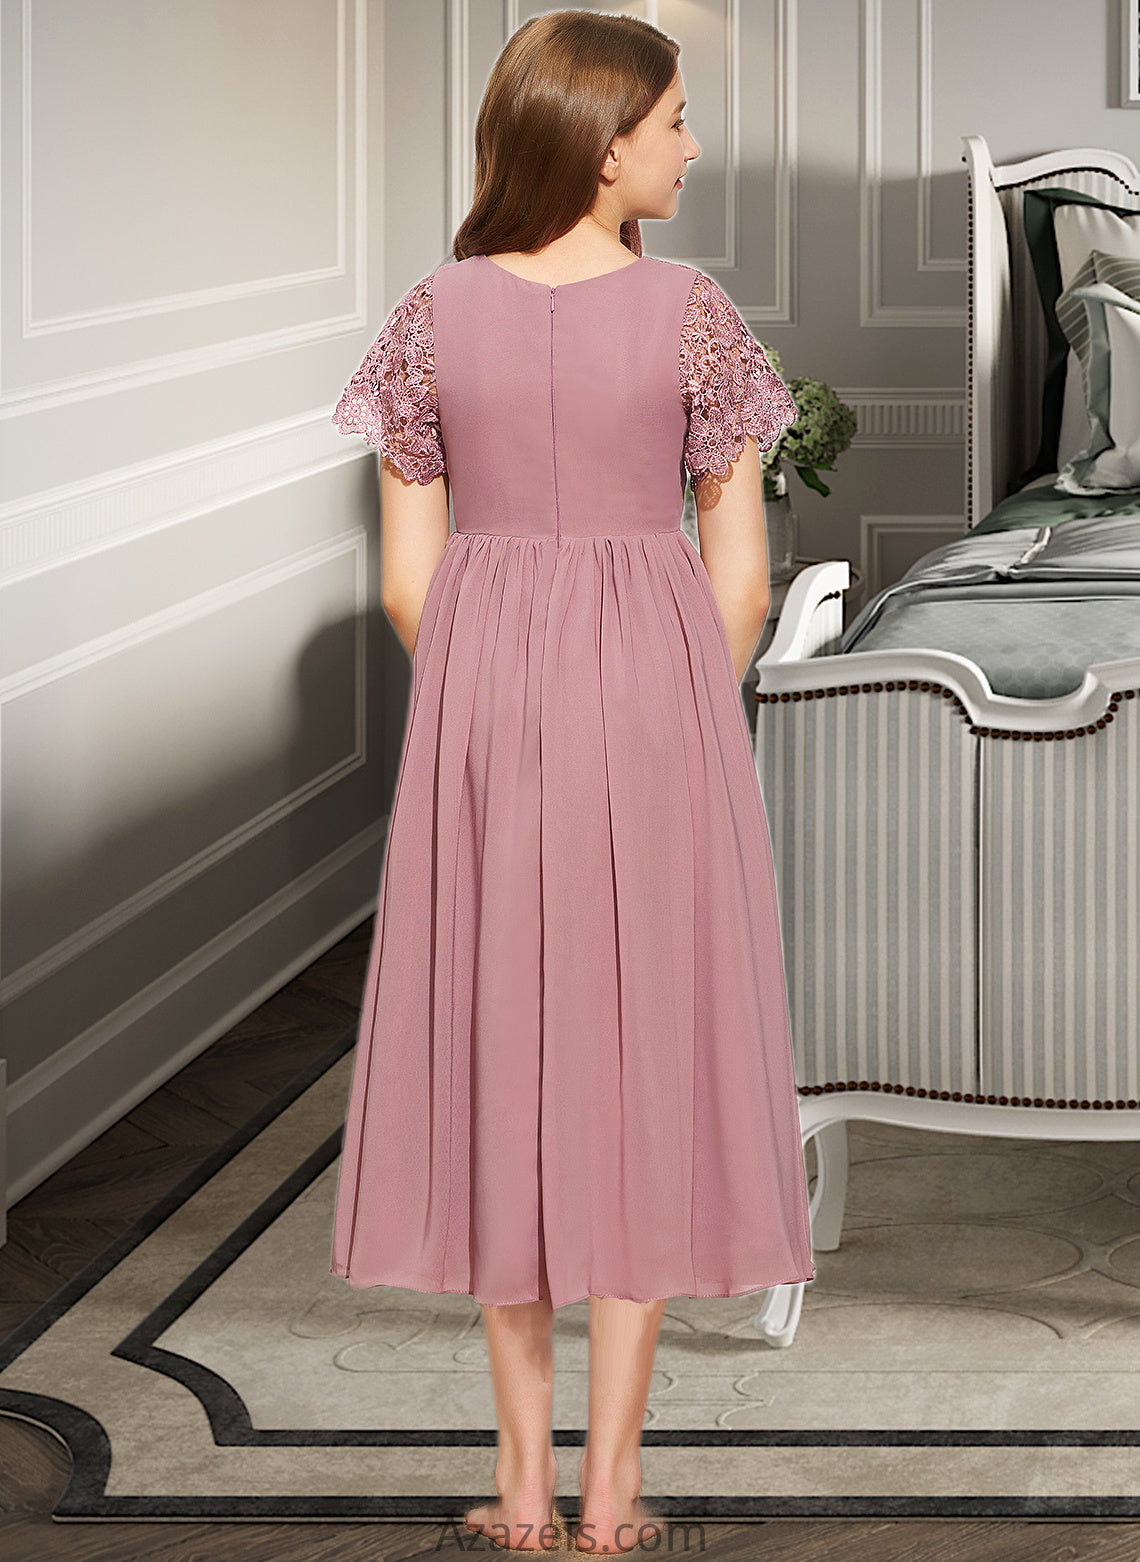 Sophie A-Line Scoop Neck Tea-Length Chiffon Lace Junior Bridesmaid Dress DFP0013648